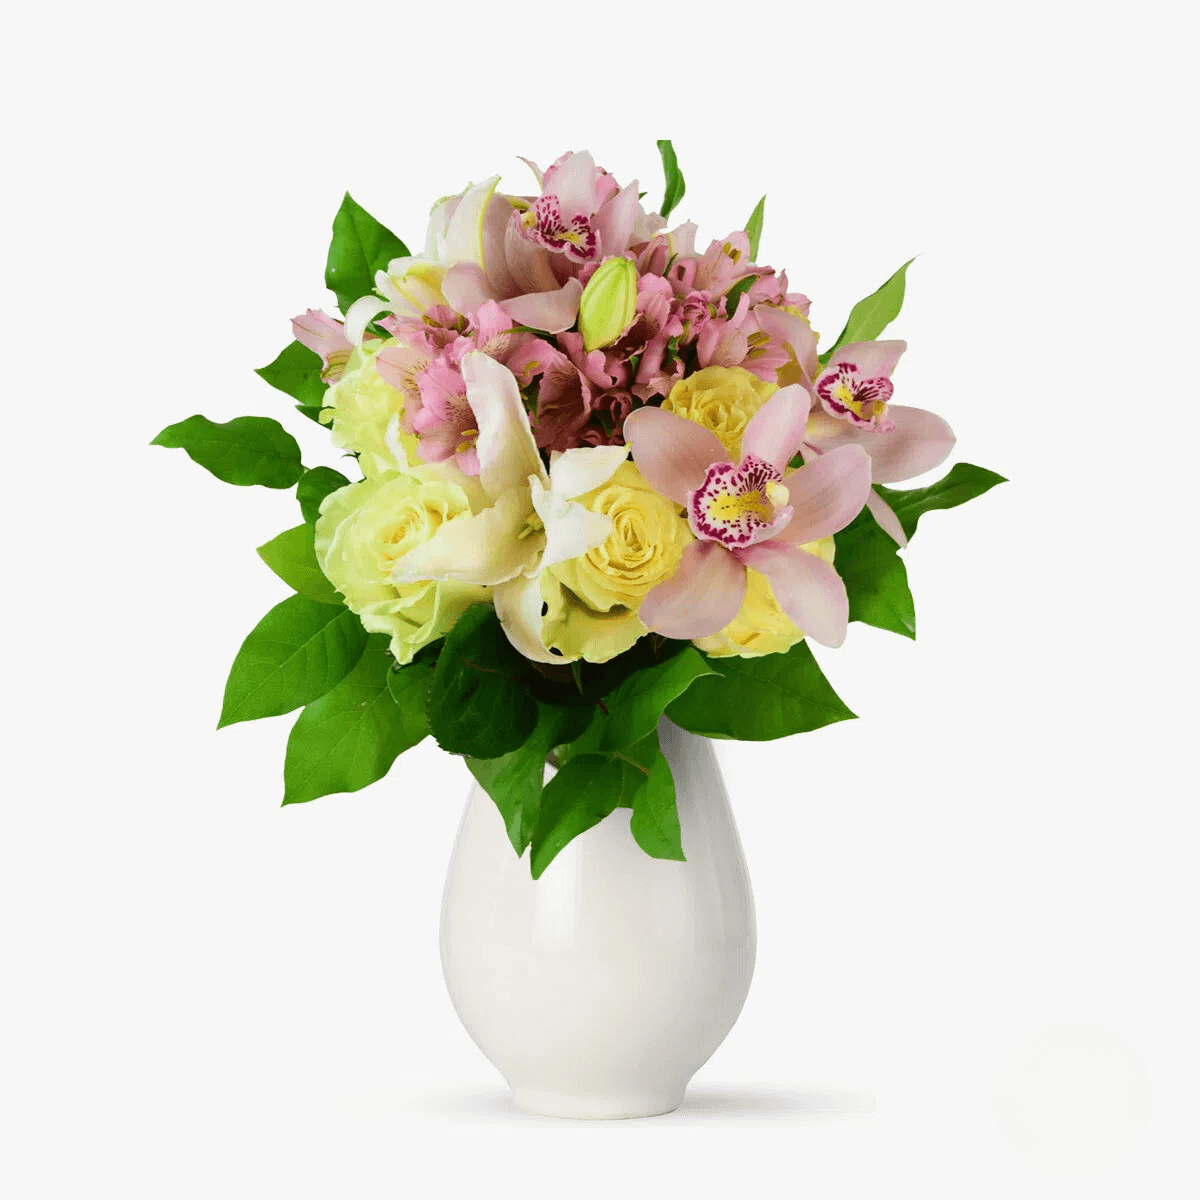 Buchet de flori cu Alstroemeria roz, 3 Orhidee Cymbidium Cupa roz, Crin asiatic alb Eleganta toamnei